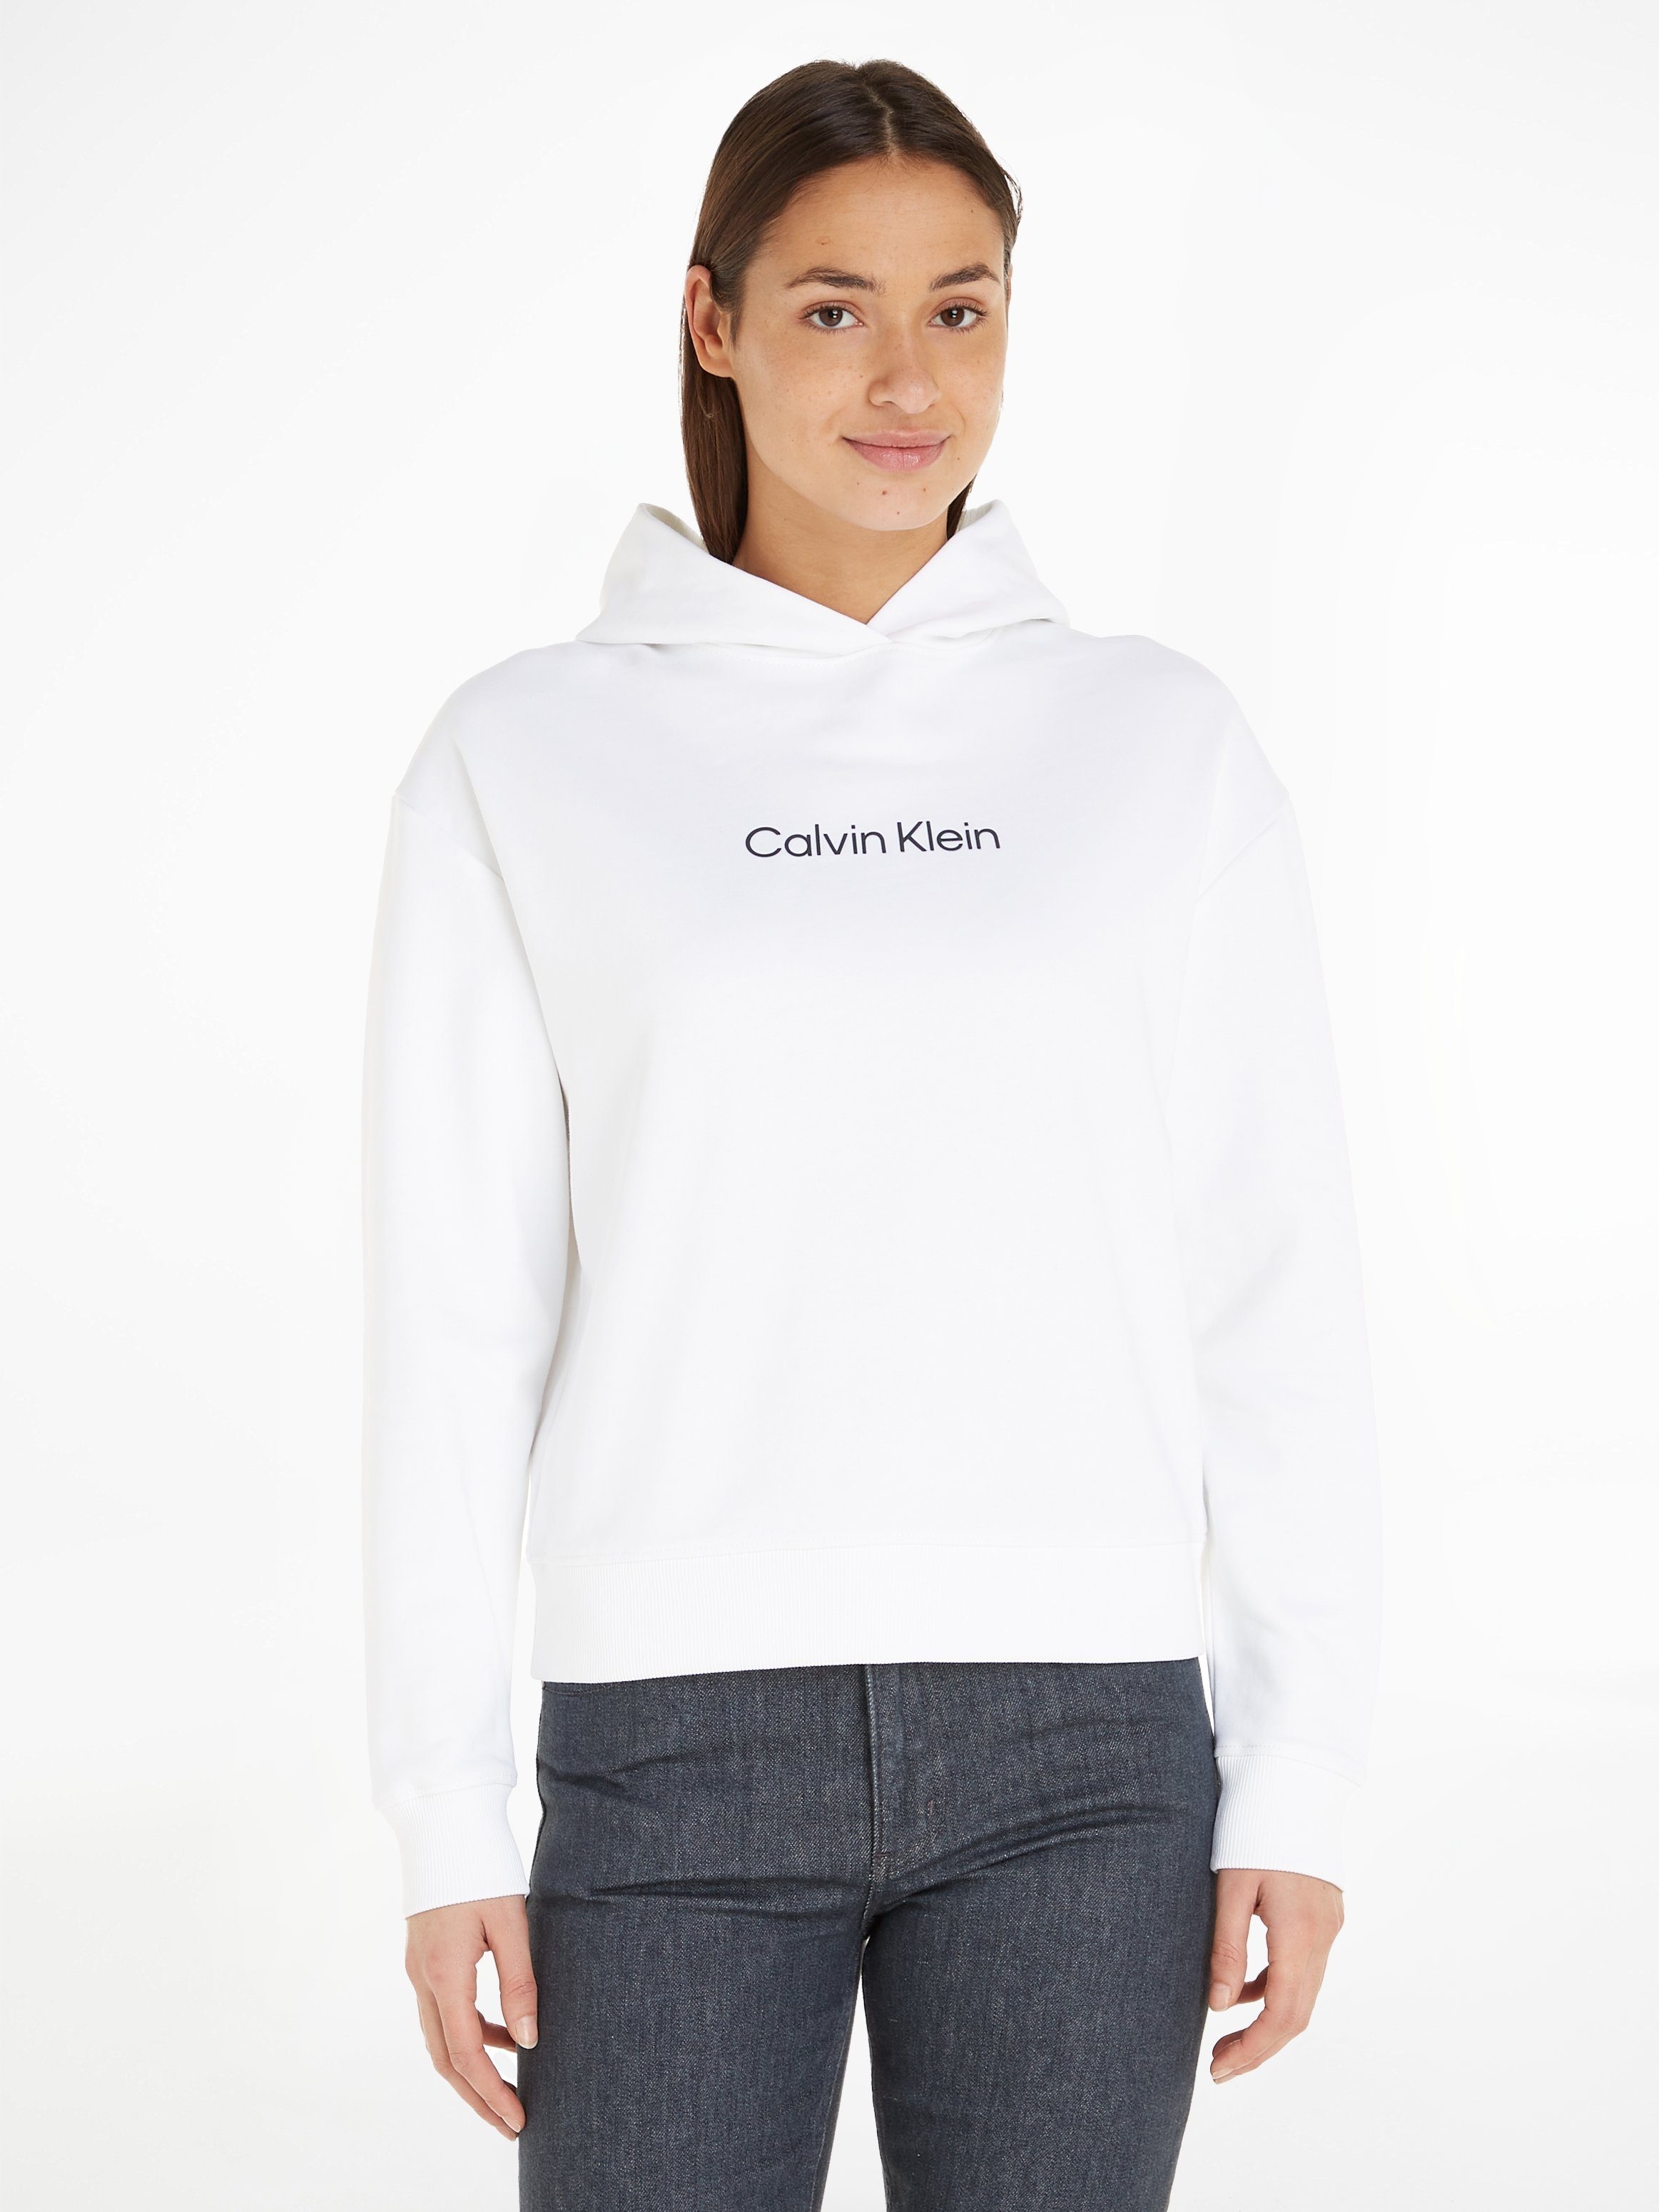 Calvin Klein Hoodies für Damen online kaufen | OTTO